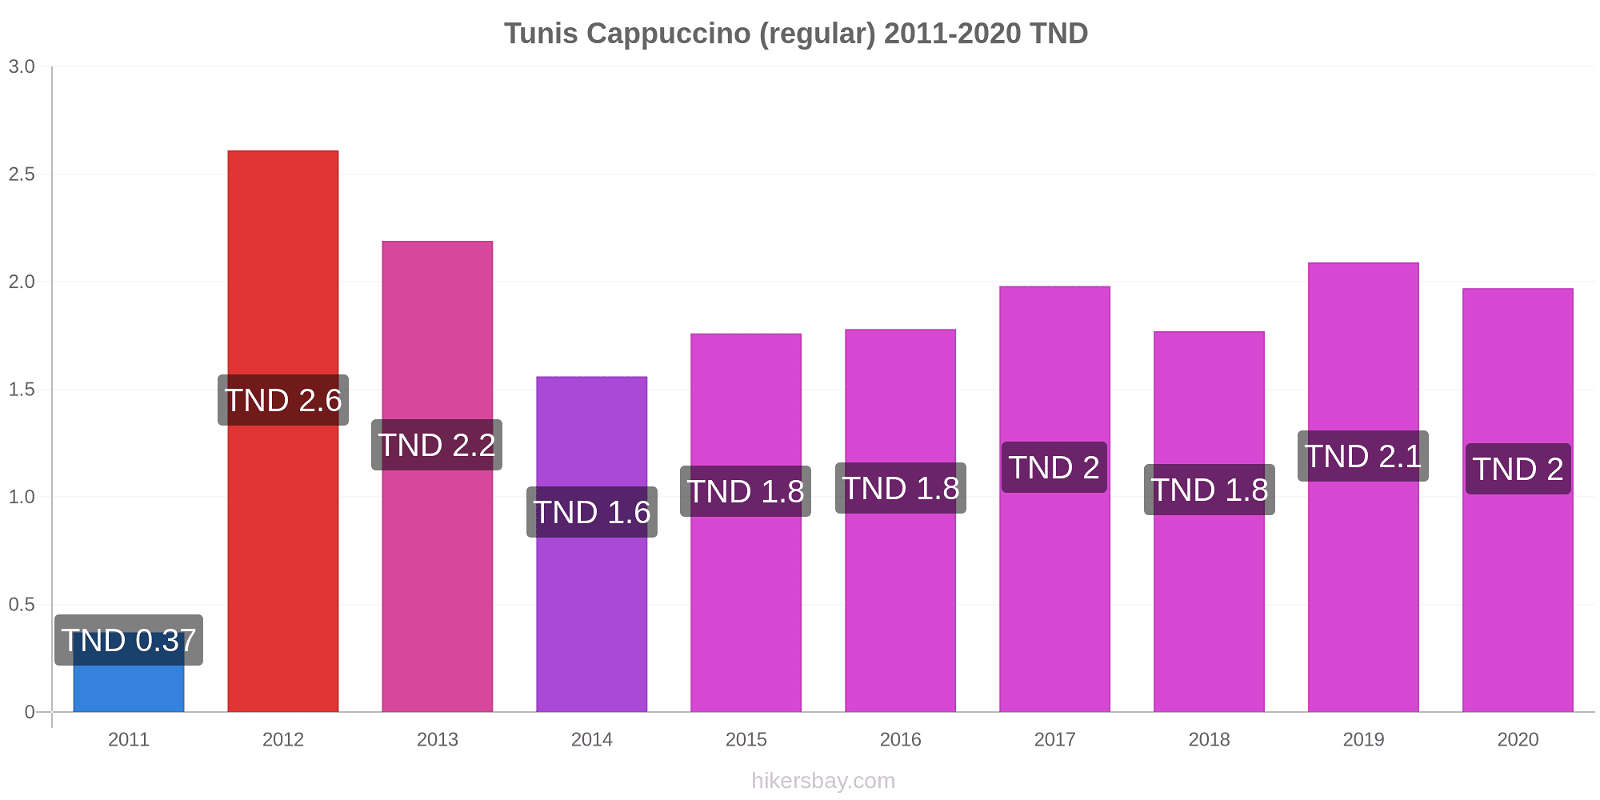 Tunis price changes Cappuccino (regular) hikersbay.com